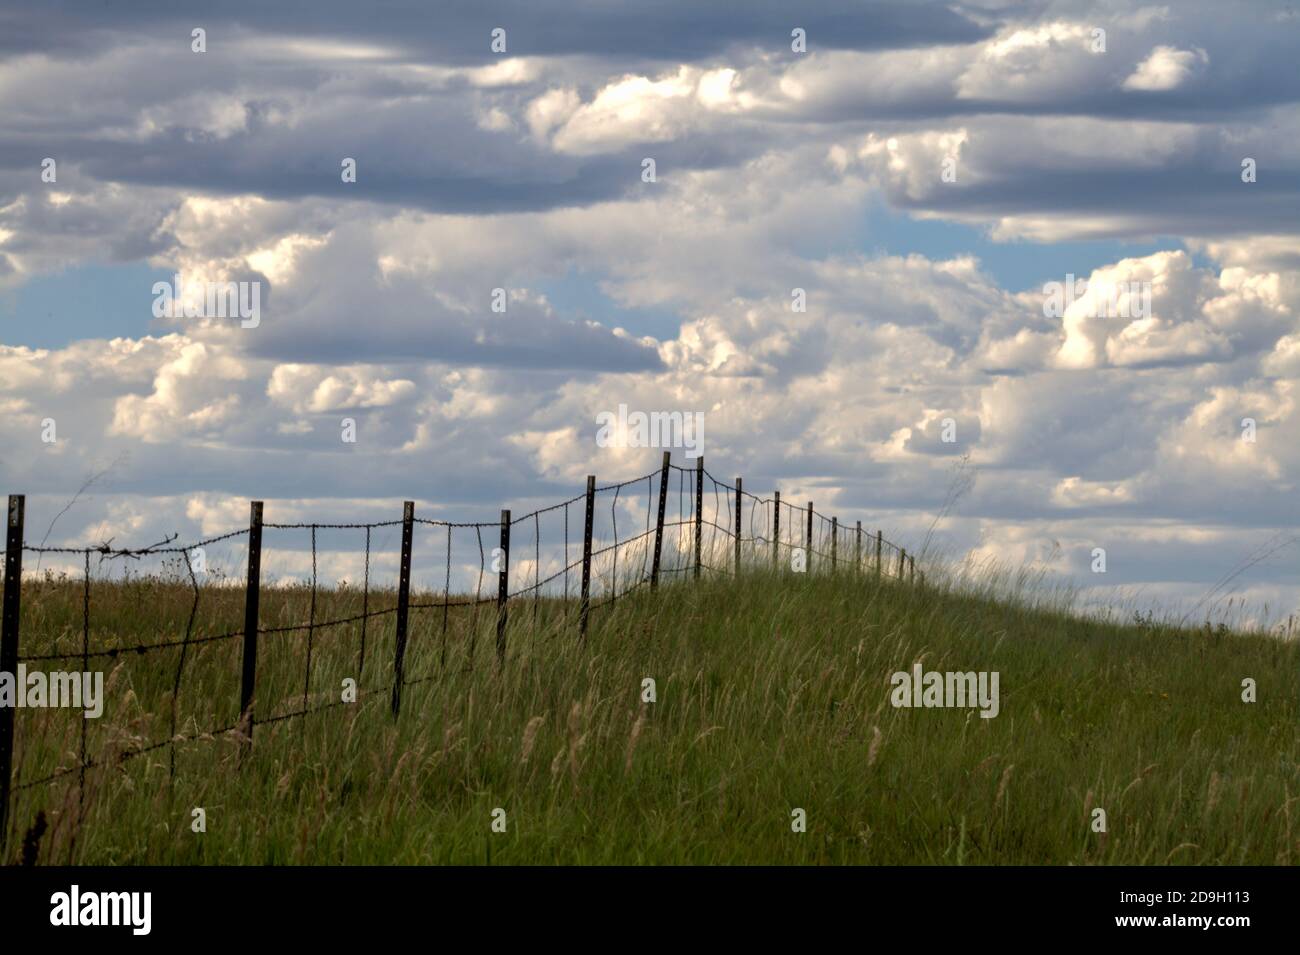 En un día de verano, puffy brillantemente iluminado, nubes cúmulos flotan sobre un campo de hierba dividido por una valla de alambre de púas de tres varados. Foto de stock